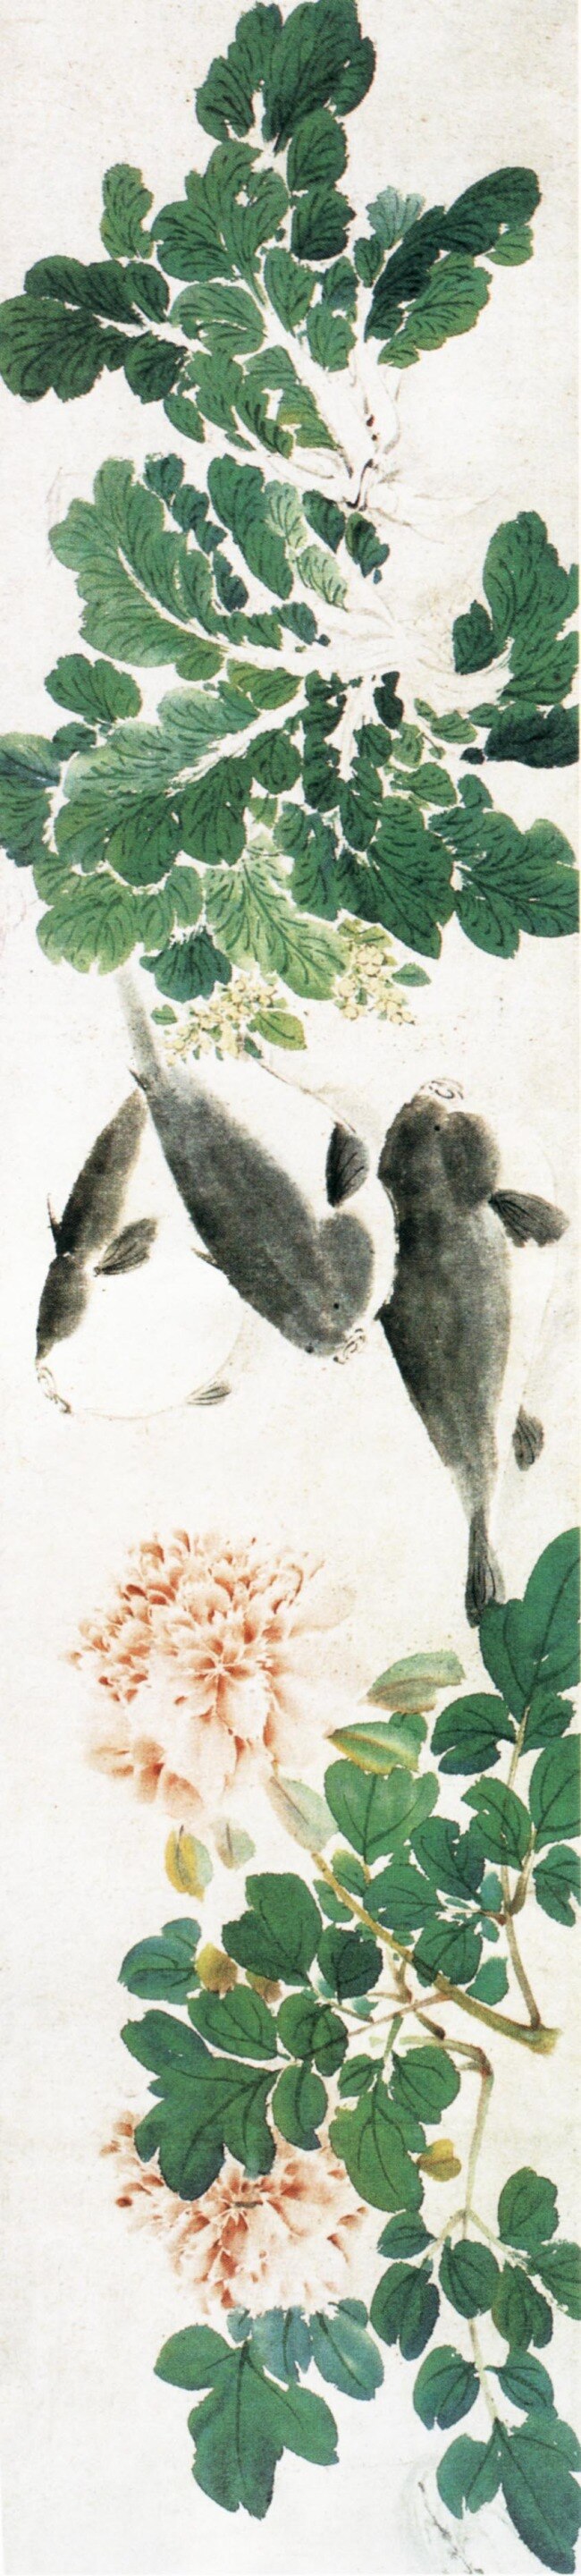 牡丹 鱼 古典 古画 国画 绘画 水墨 中国画 牡丹鱼 中华传世国画 中国画艺术 文化艺术